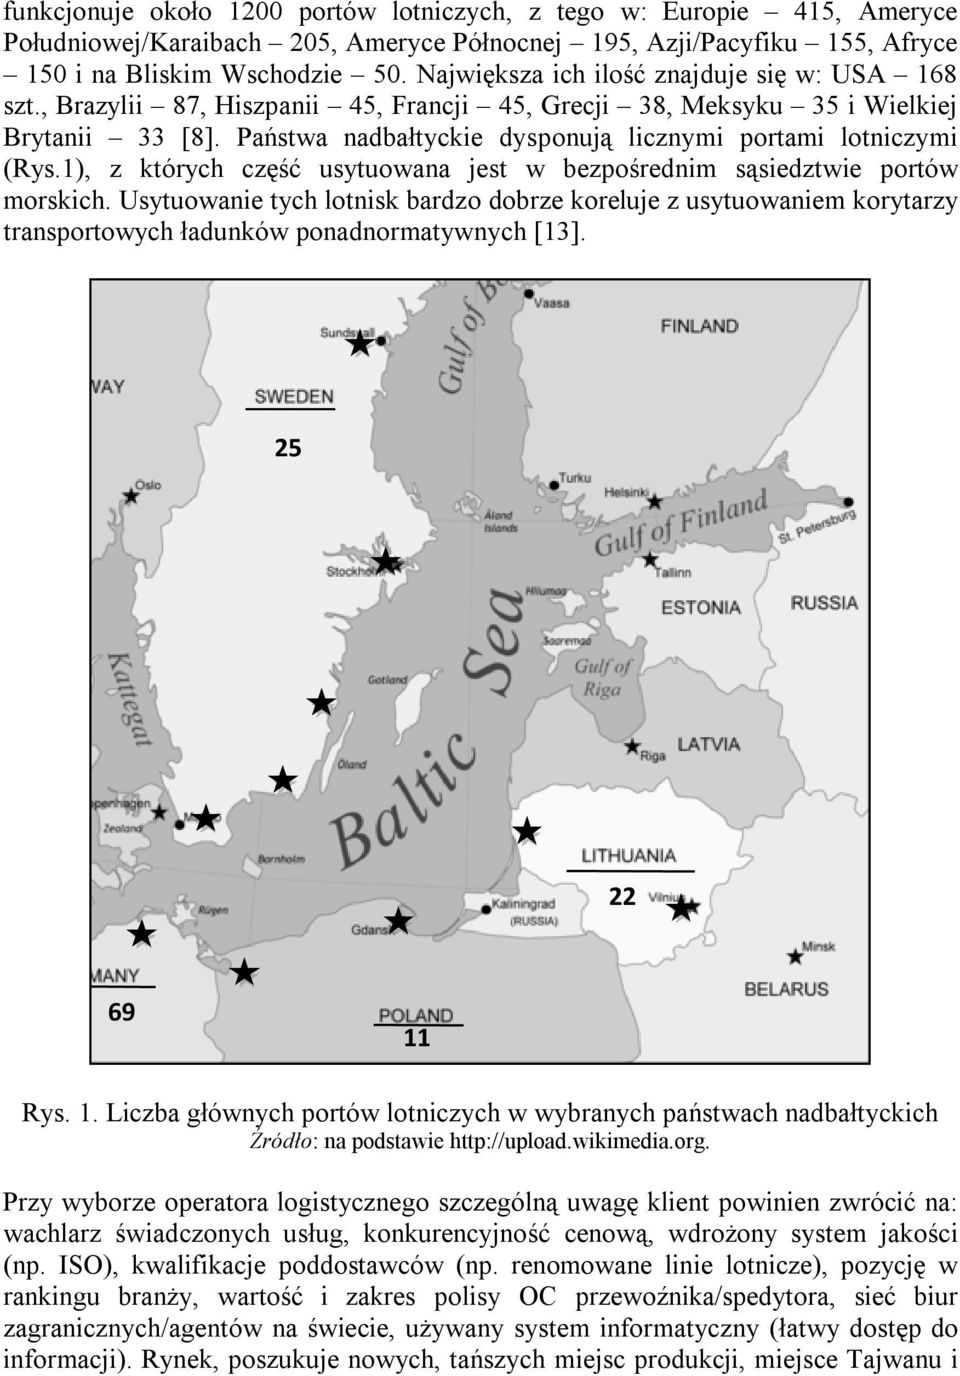 Państwa nadbałtyckie dysponują licznymi portami lotniczymi (Rys.1), z których część usytuowana jest w bezpośrednim sąsiedztwie portów morskich.